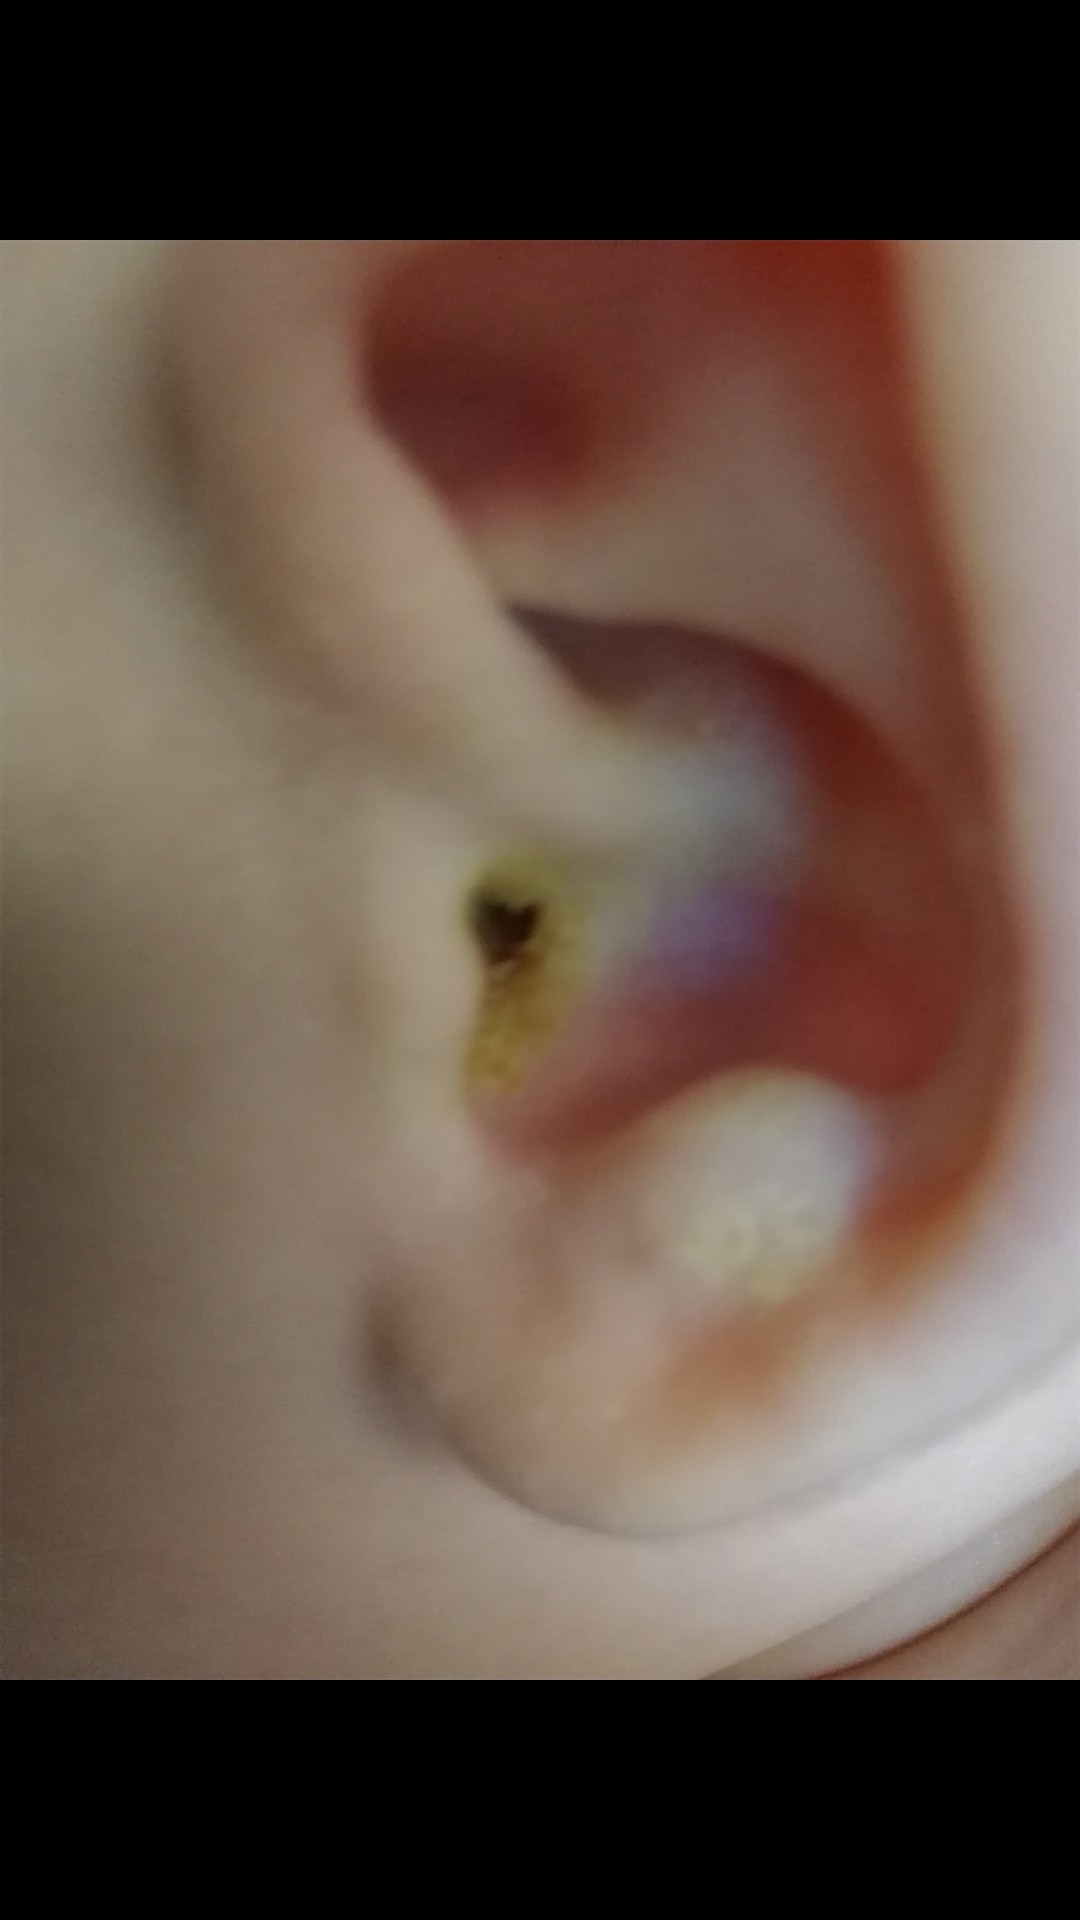 Серная пробка в ухе у ребенка фото